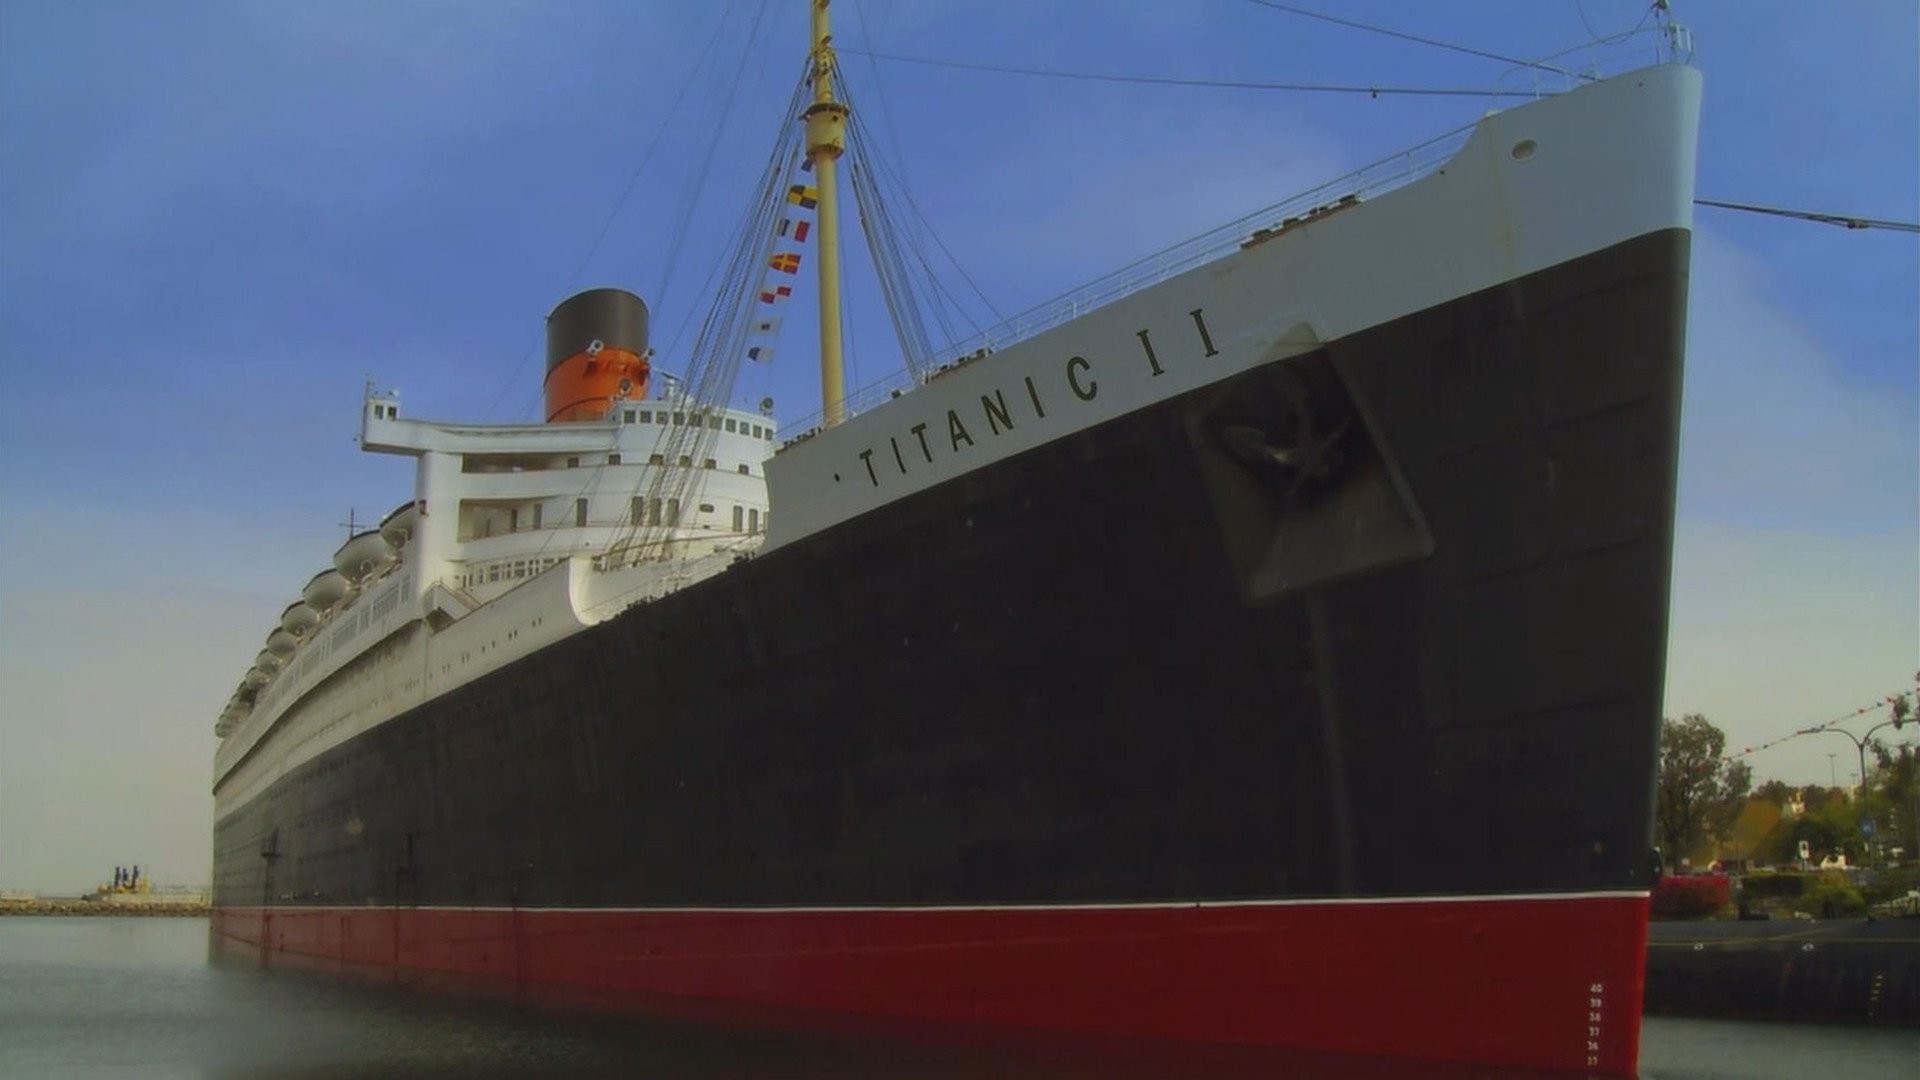 1920x1080 Titanic 2 - Die RÃ¼ckkehr, Bildquelle: themoviedb.org